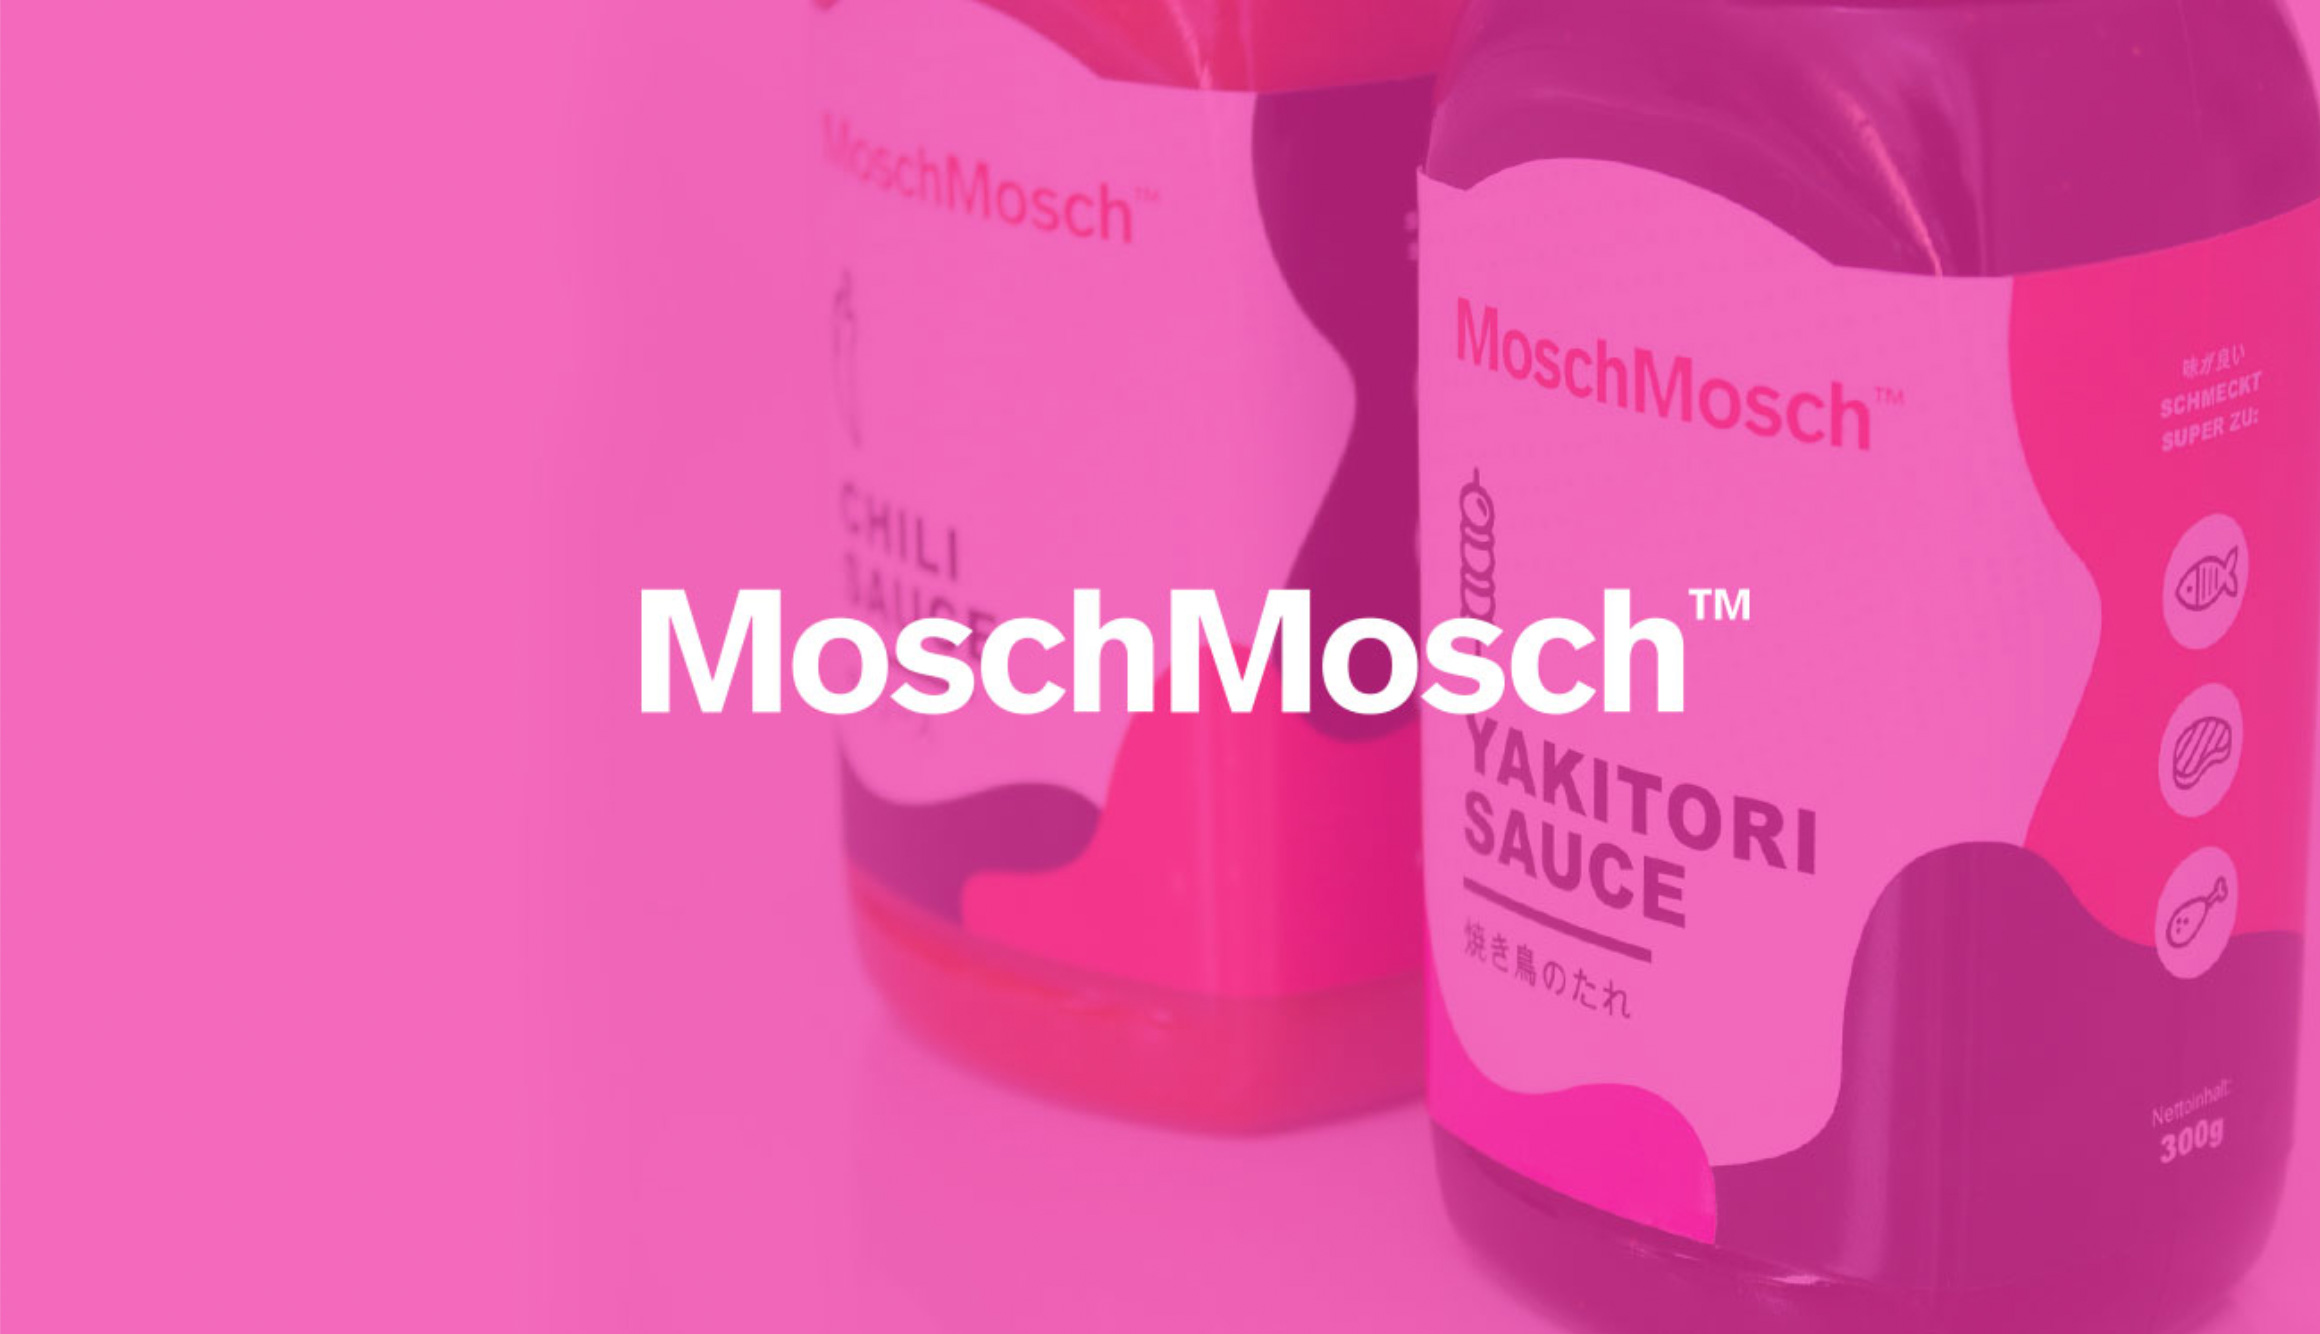 MoschMosch Packaging Design